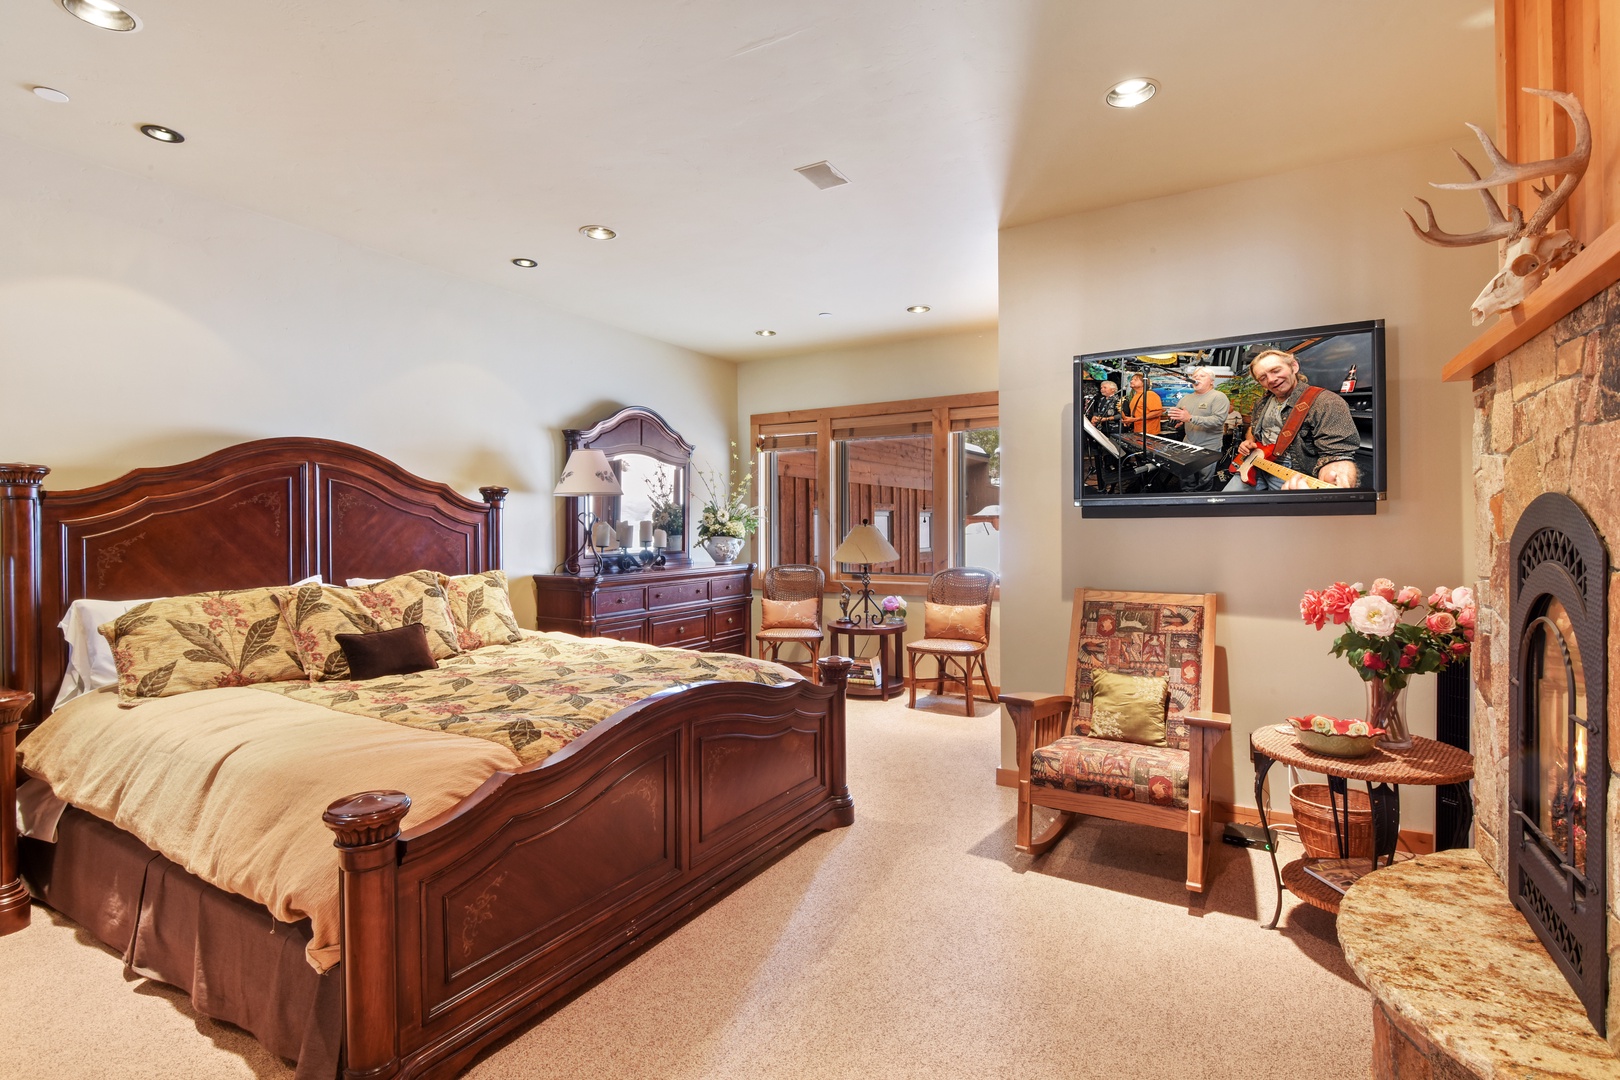 3rd bedroom (ground floor): King bed, Smart TV, fireplace